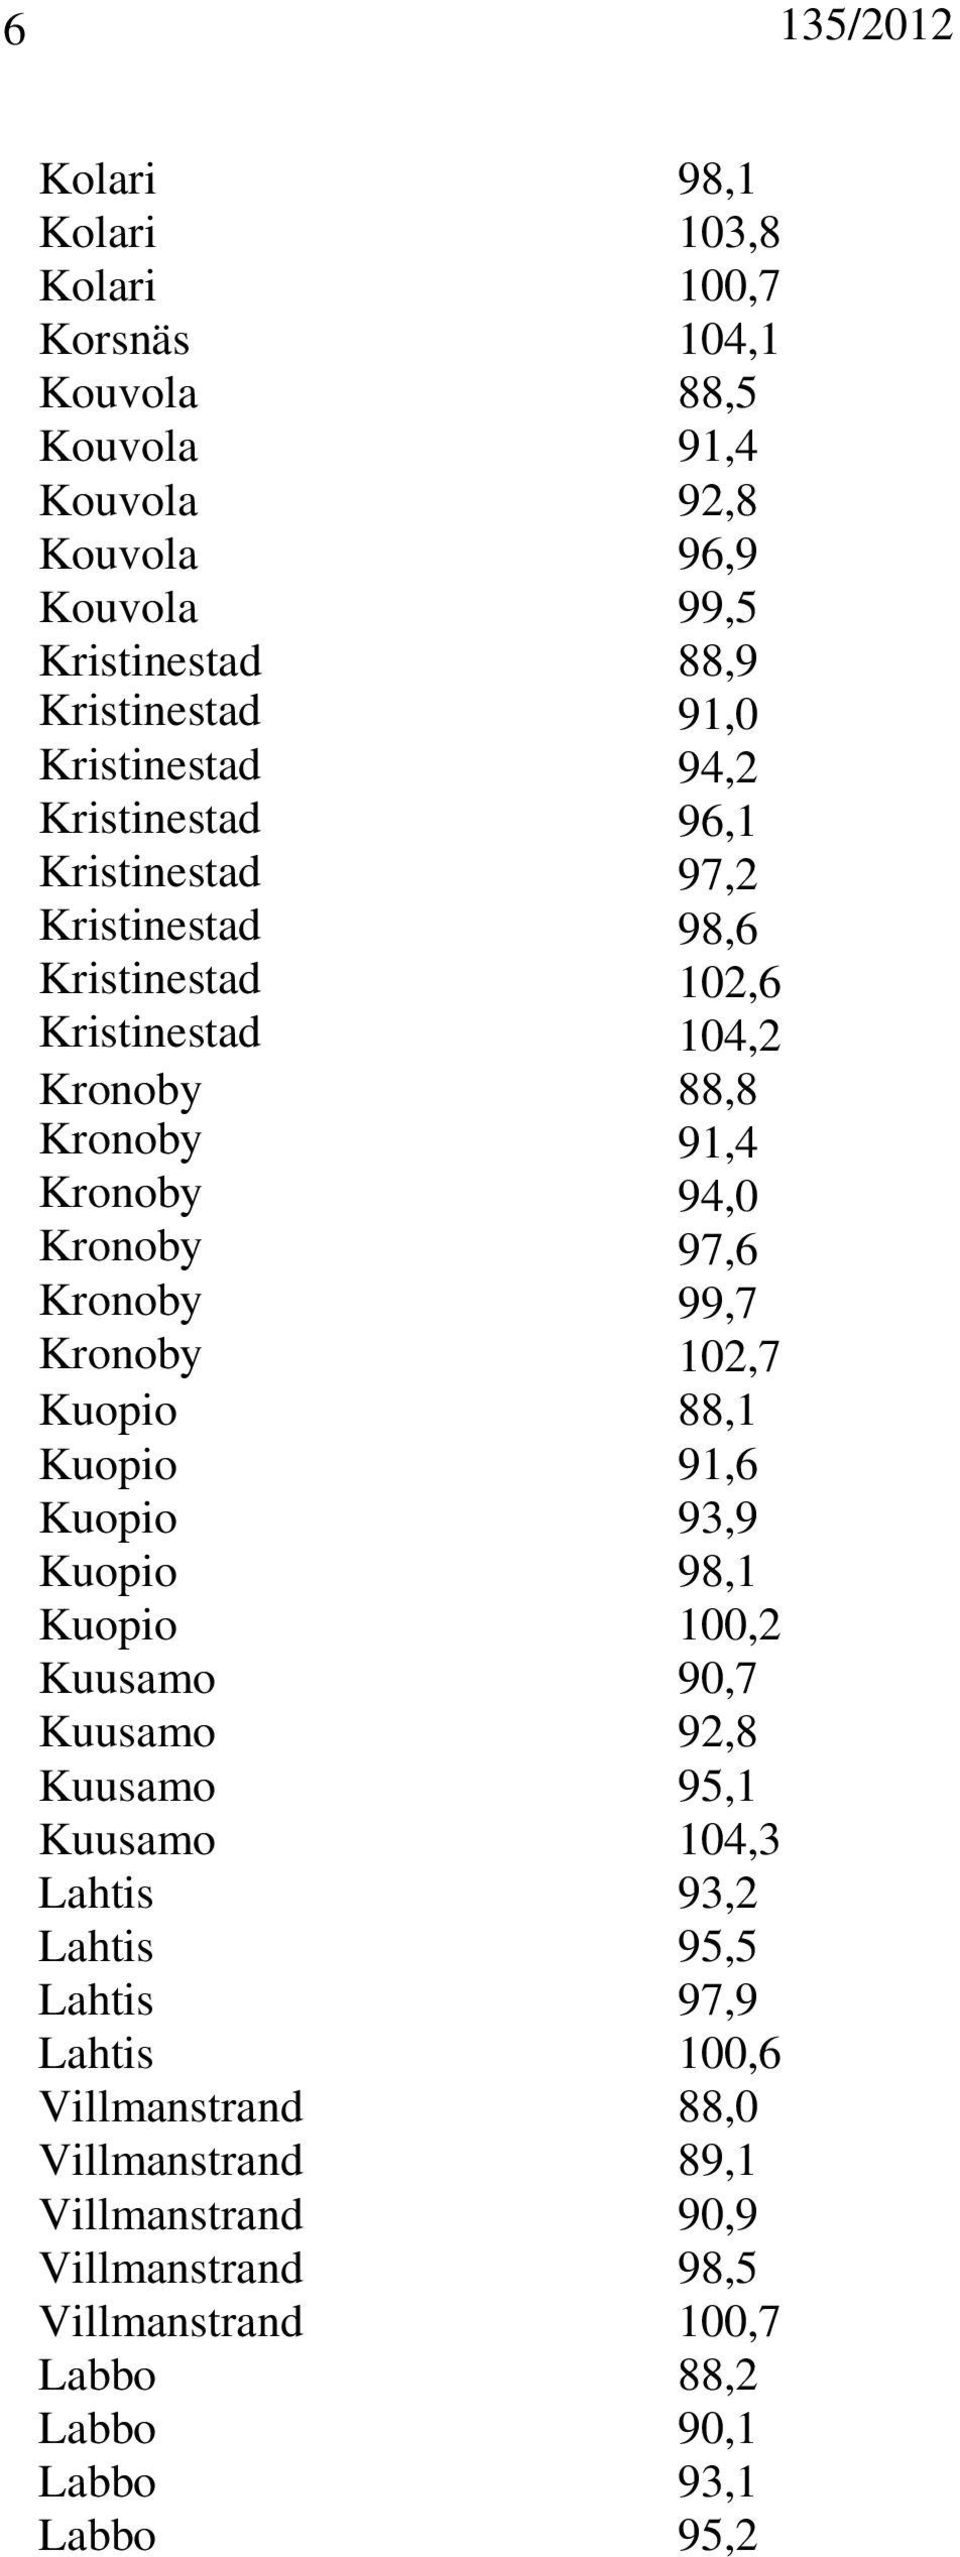 Kronoby 99,7 Kronoby 102,7 Kuopio 88,1 Kuopio 91,6 Kuopio 93,9 Kuopio 98,1 Kuopio 100,2 Kuusamo 90,7 Kuusamo 92,8 Kuusamo 95,1 Kuusamo 104,3 Lahtis 93,2 Lahtis